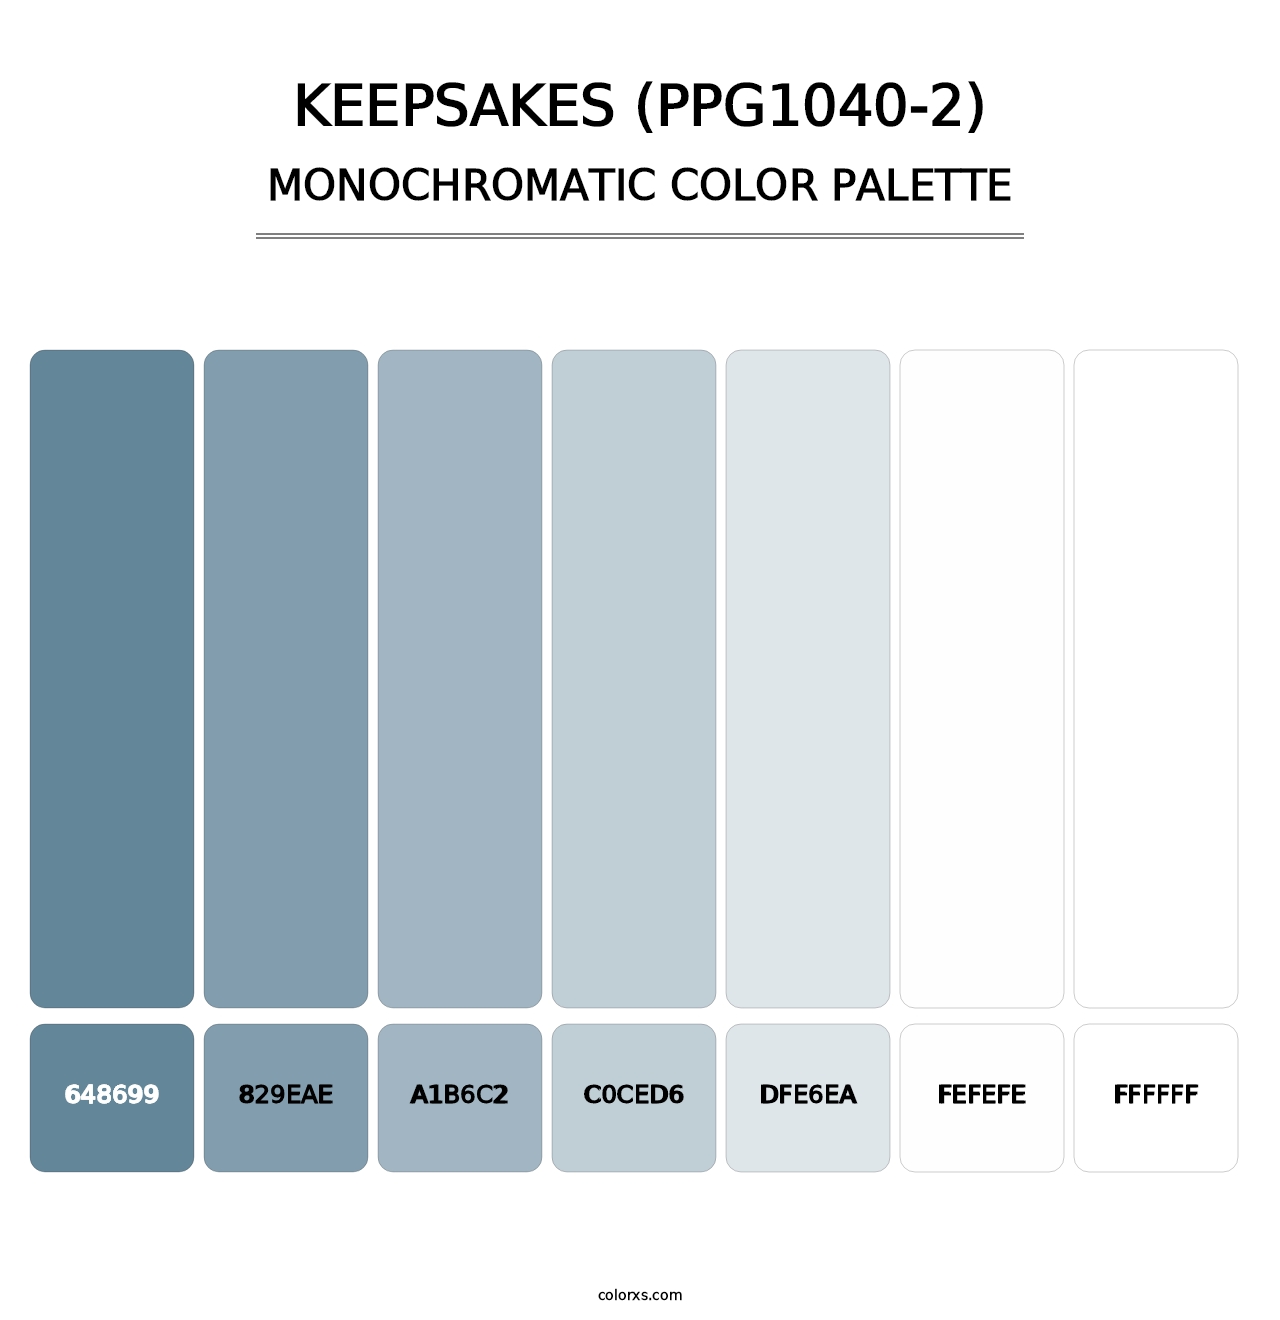 Keepsakes (PPG1040-2) - Monochromatic Color Palette